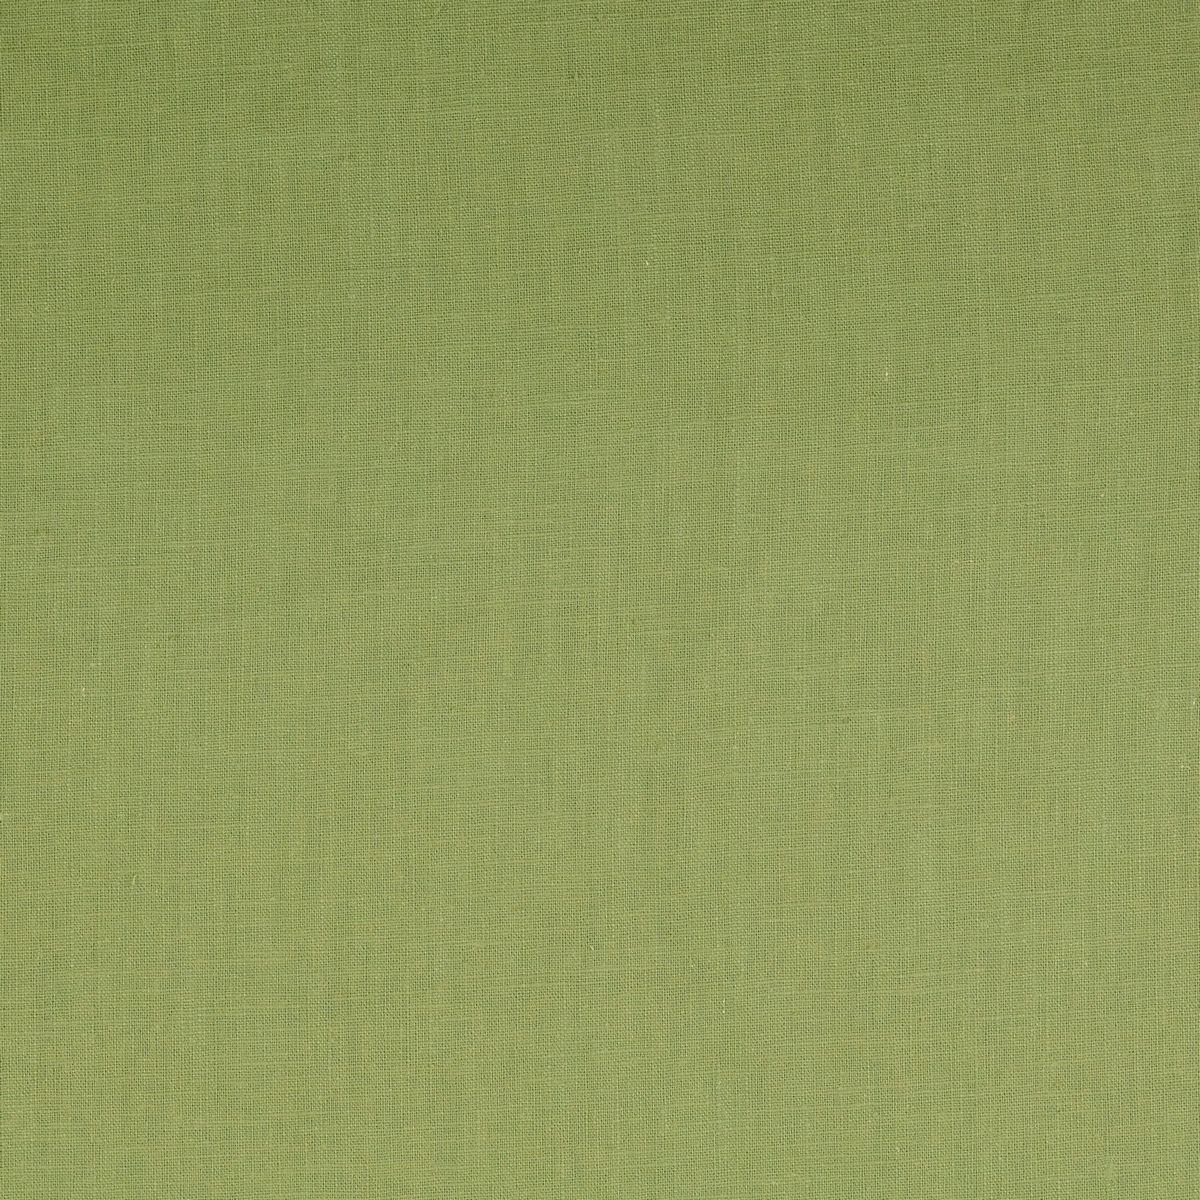 Green Tea Fabric by Chatham Glyn